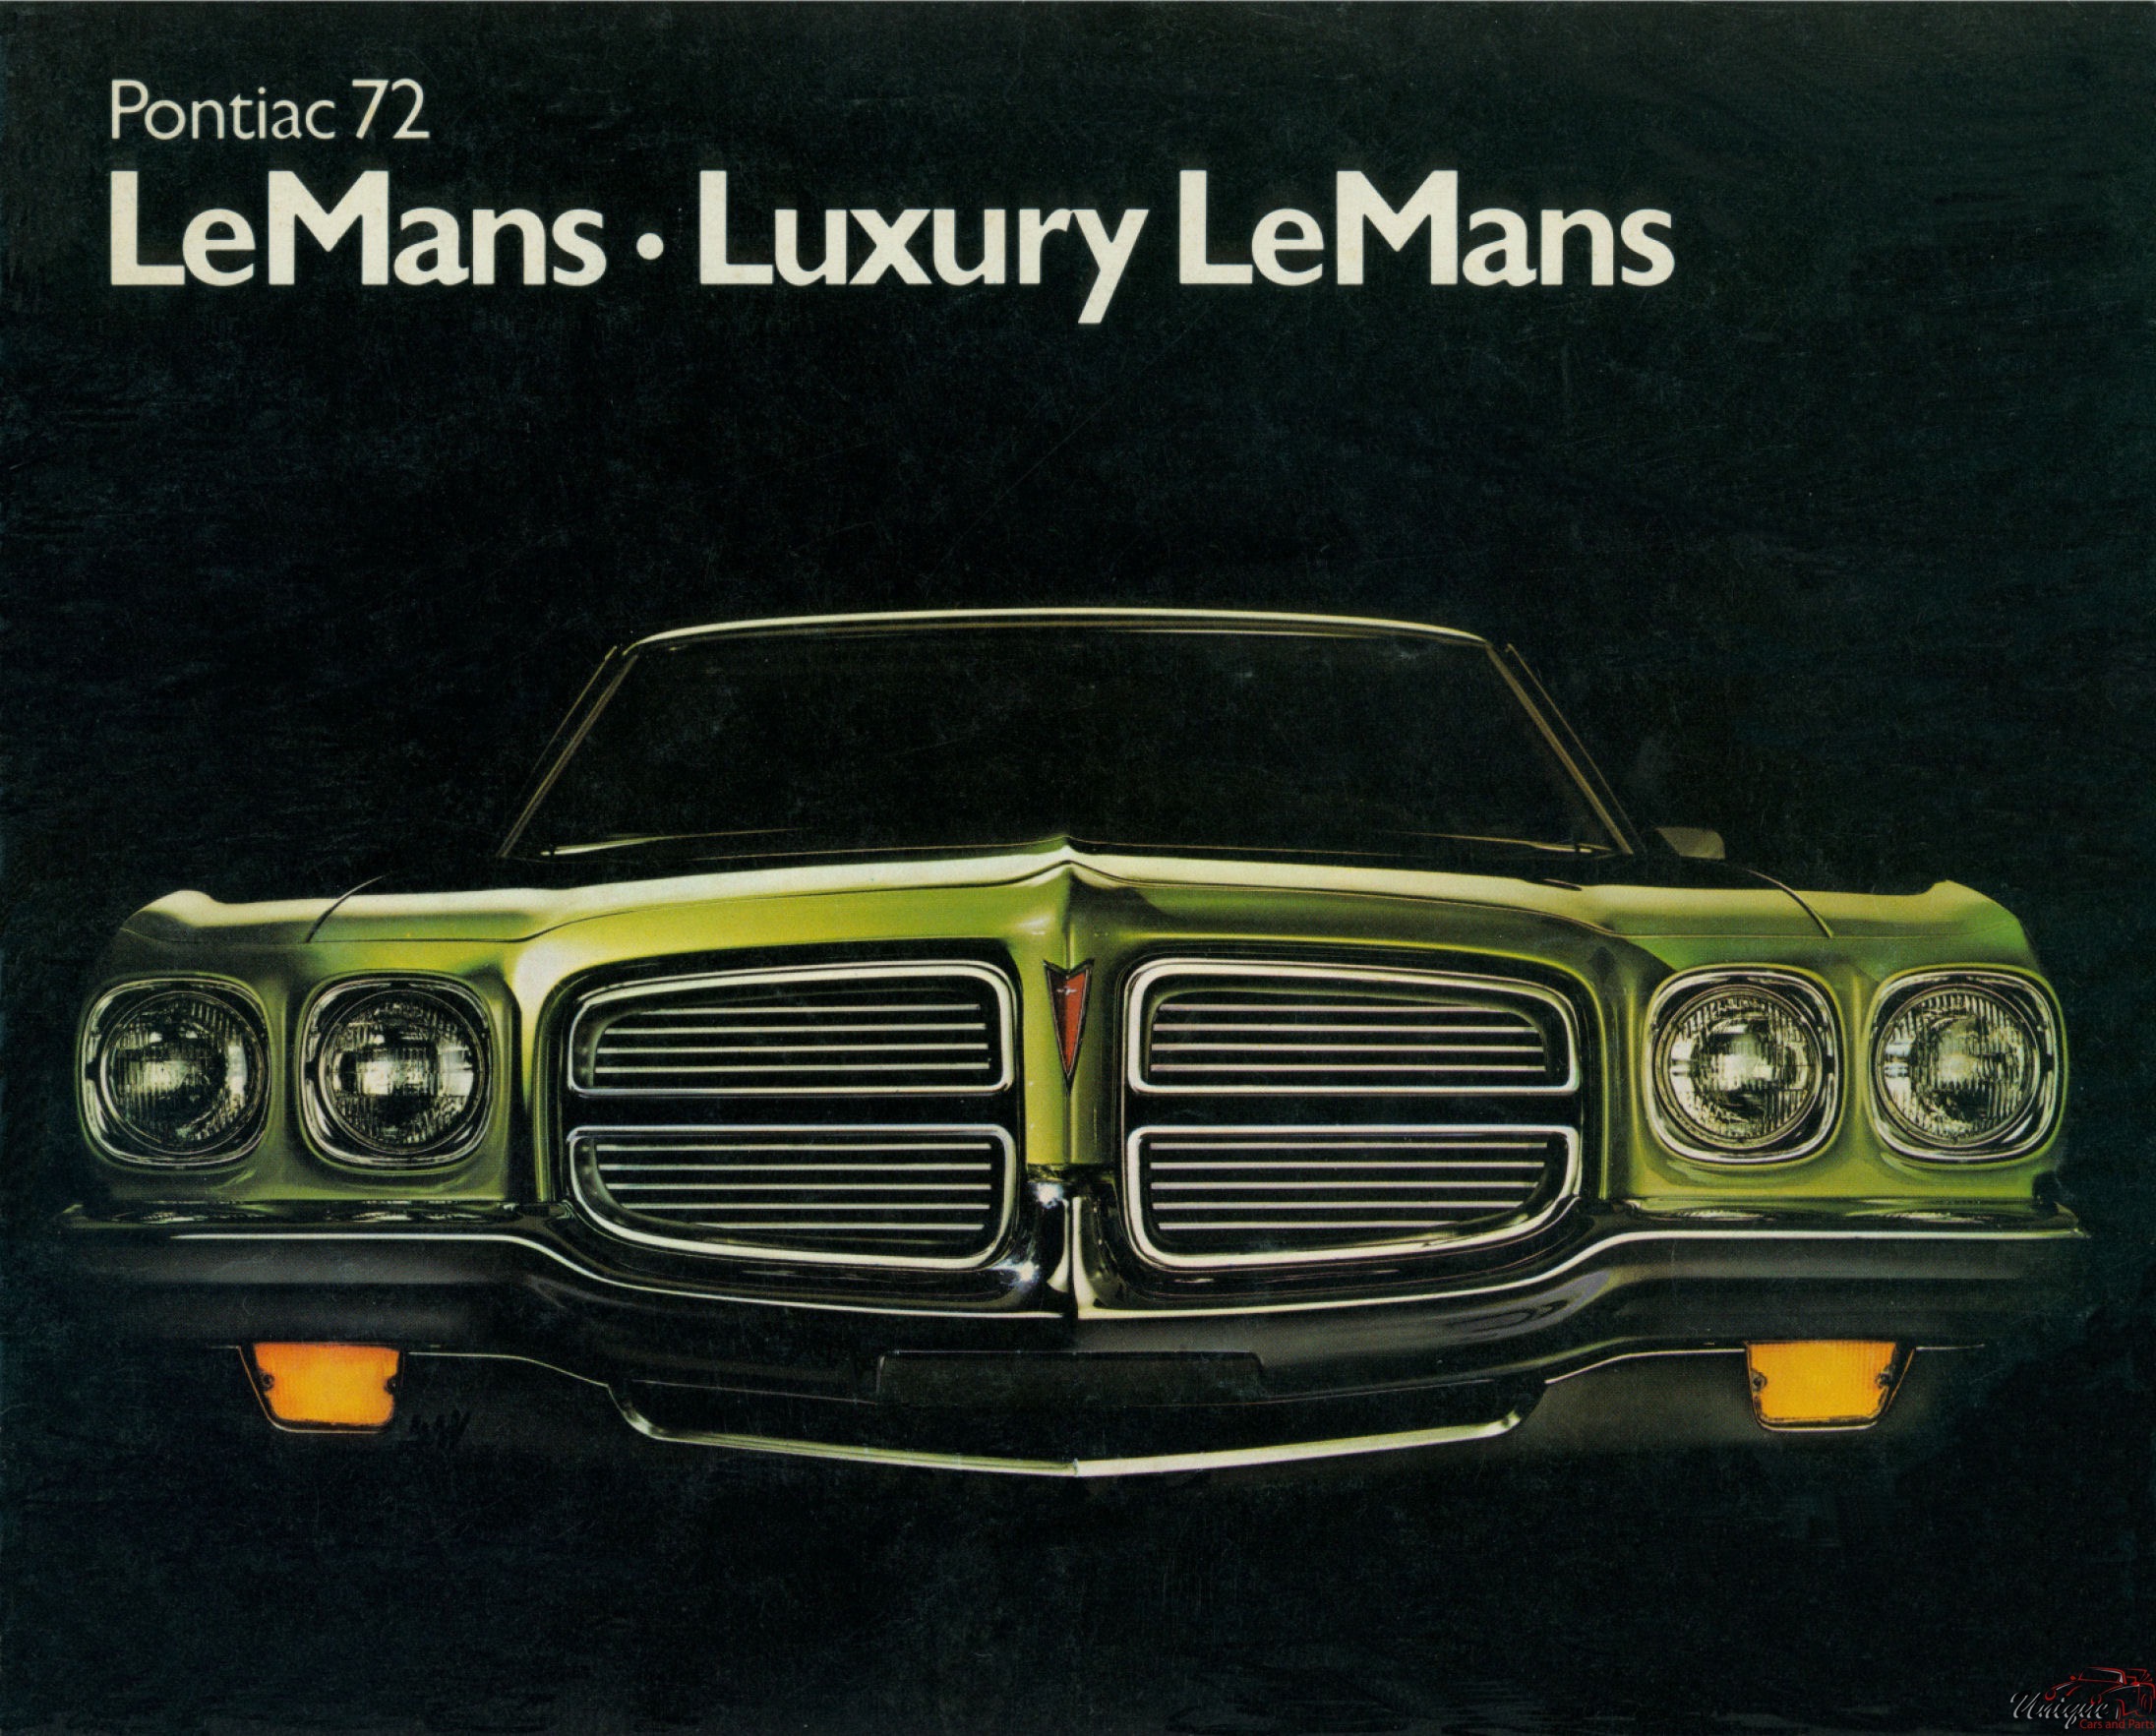 1972 Canadian Pontiac LeMans Brochure Page 1